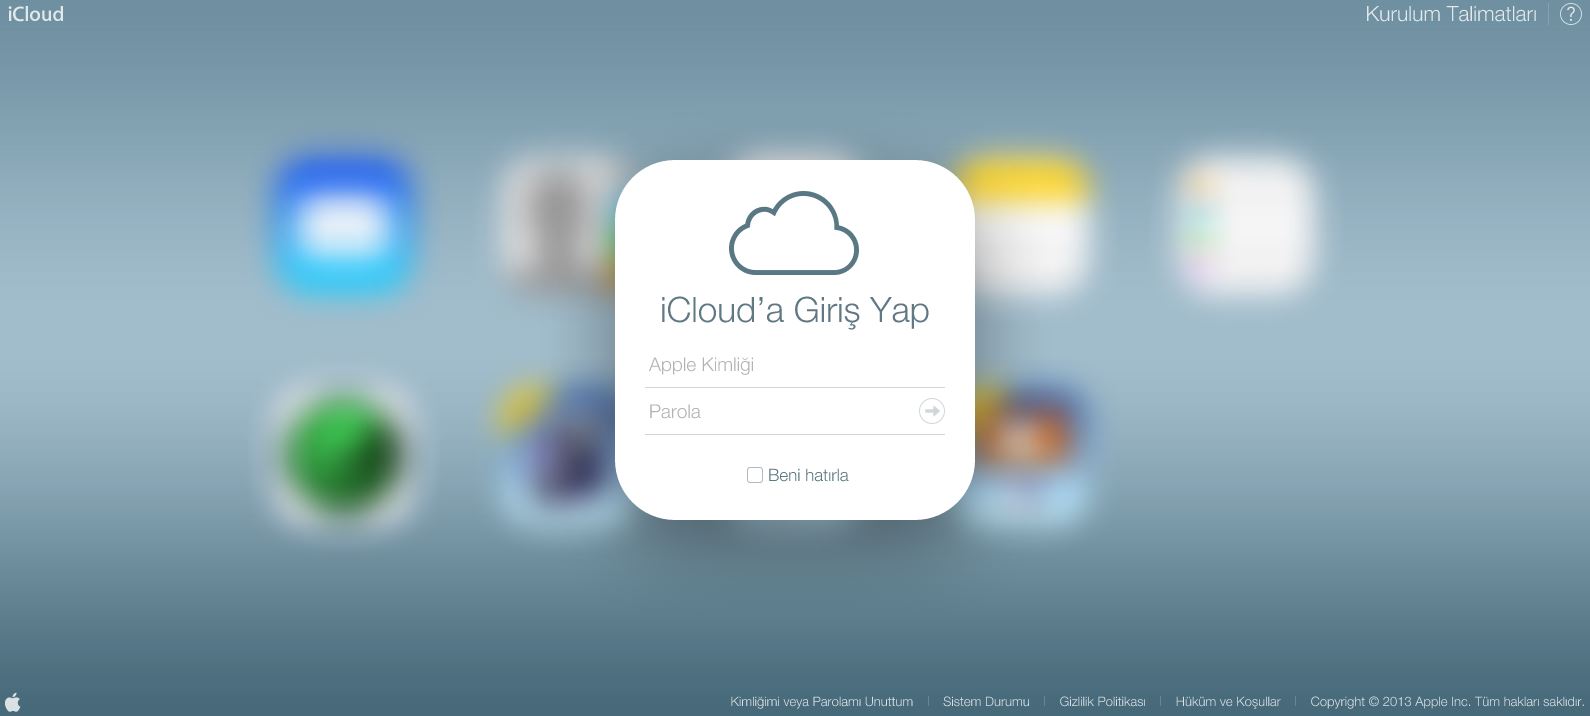 iOS 7'ye saatler kala iCloud.com yeni arayüzüyle hizmete sunuldu